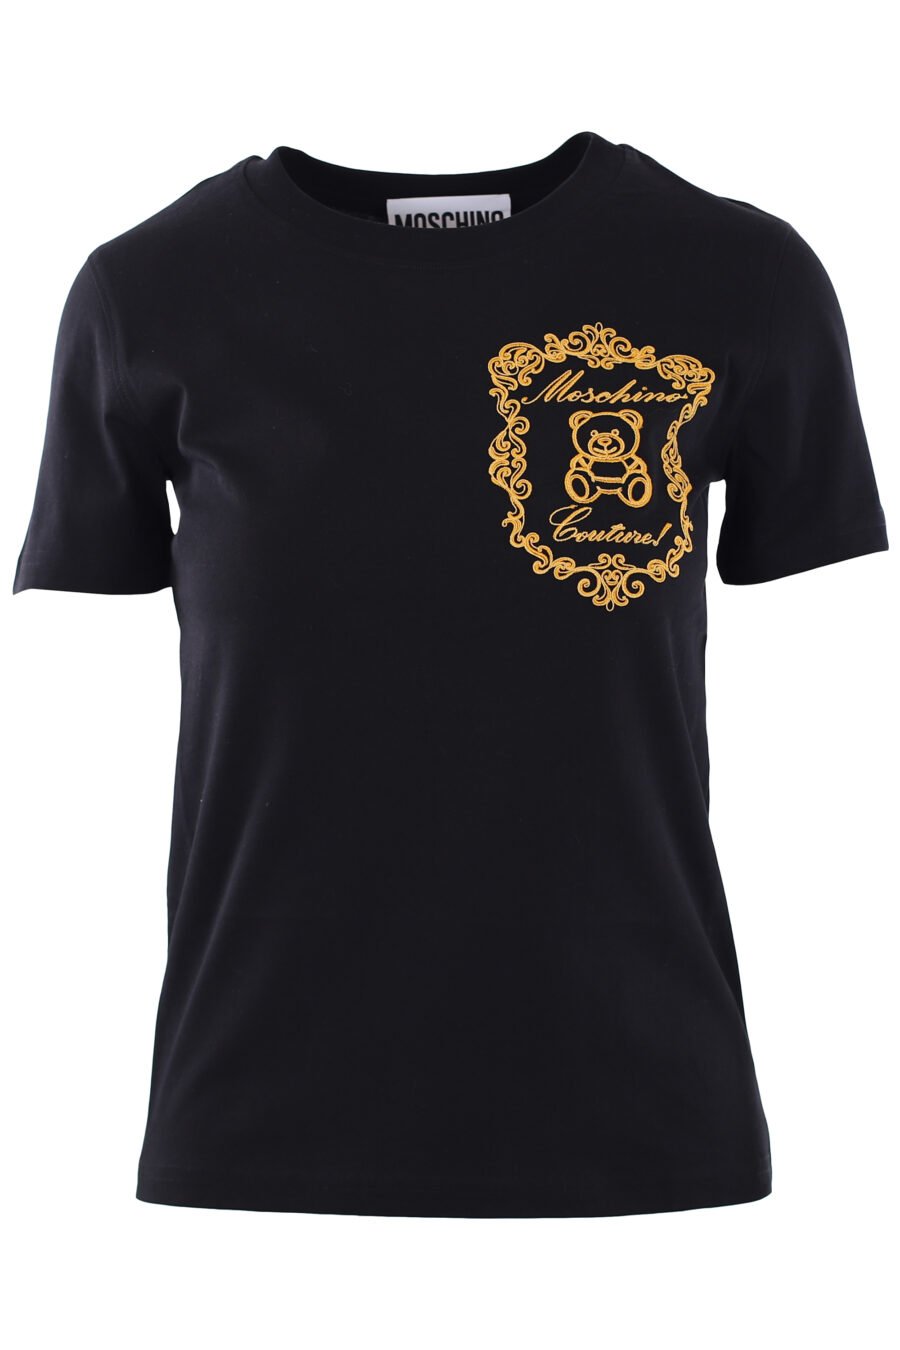 Schwarzes T-Shirt mit Bärenschild-Logo - IMG 0258